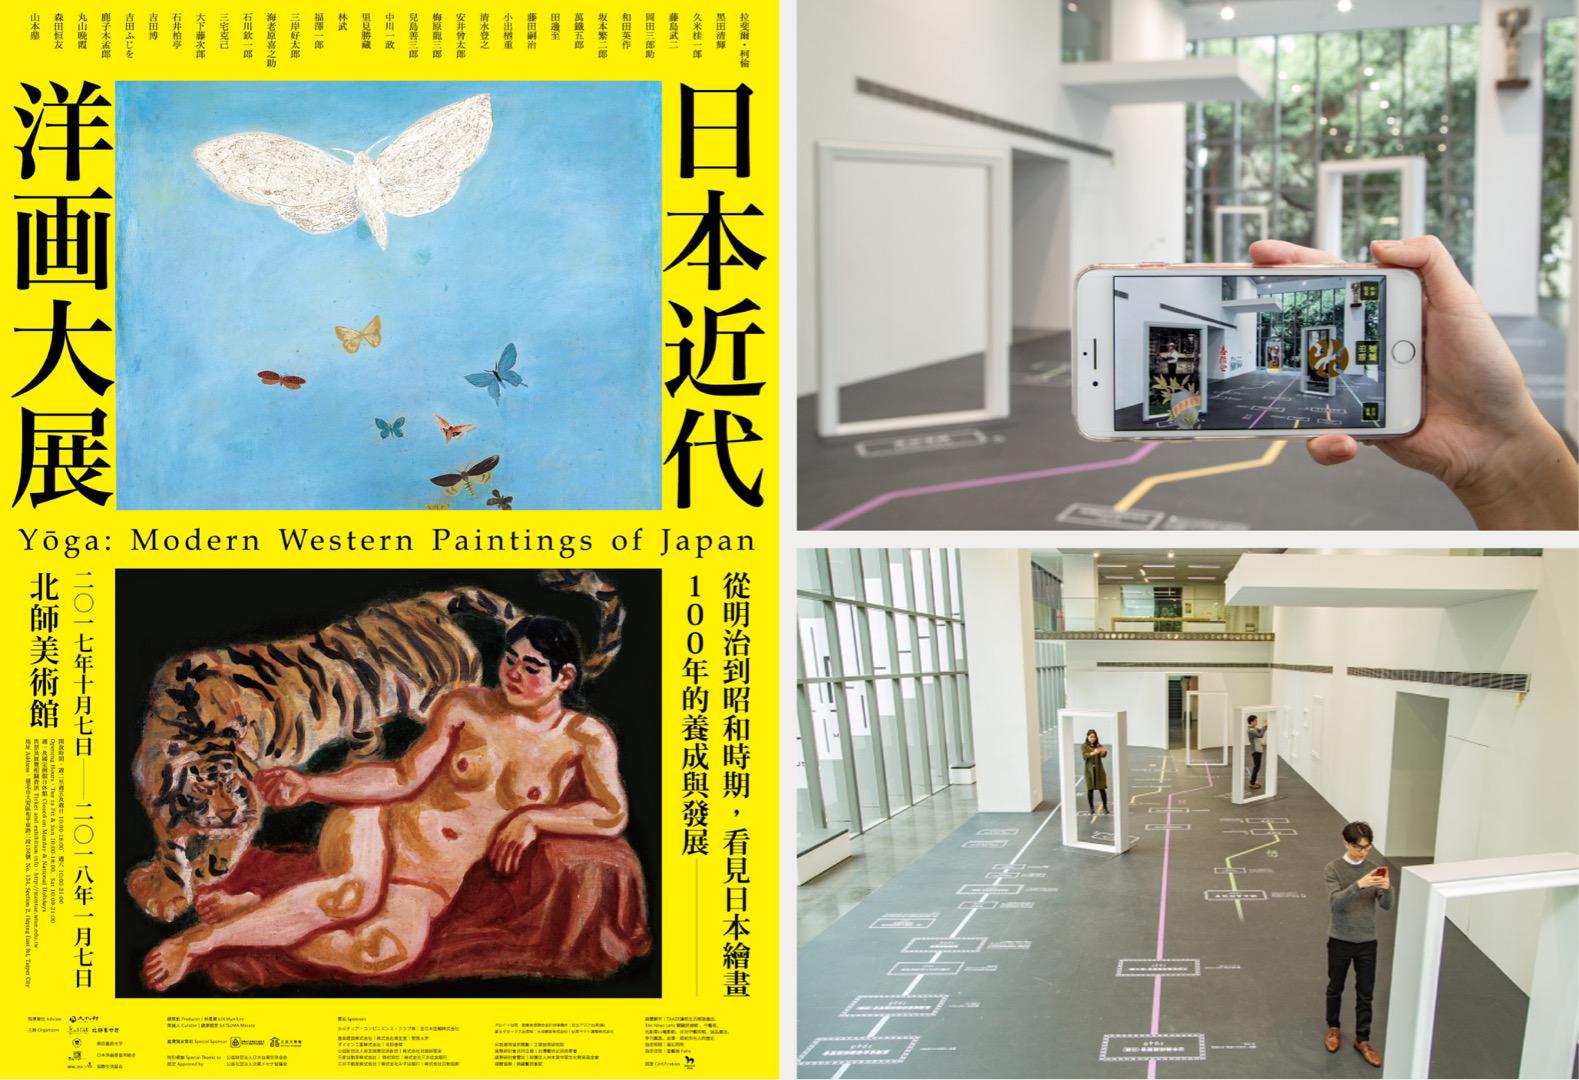 王一设计, king one, 日本近代洋画大展, interactive art, 数位互动艺术, AR体验, 互动艺术